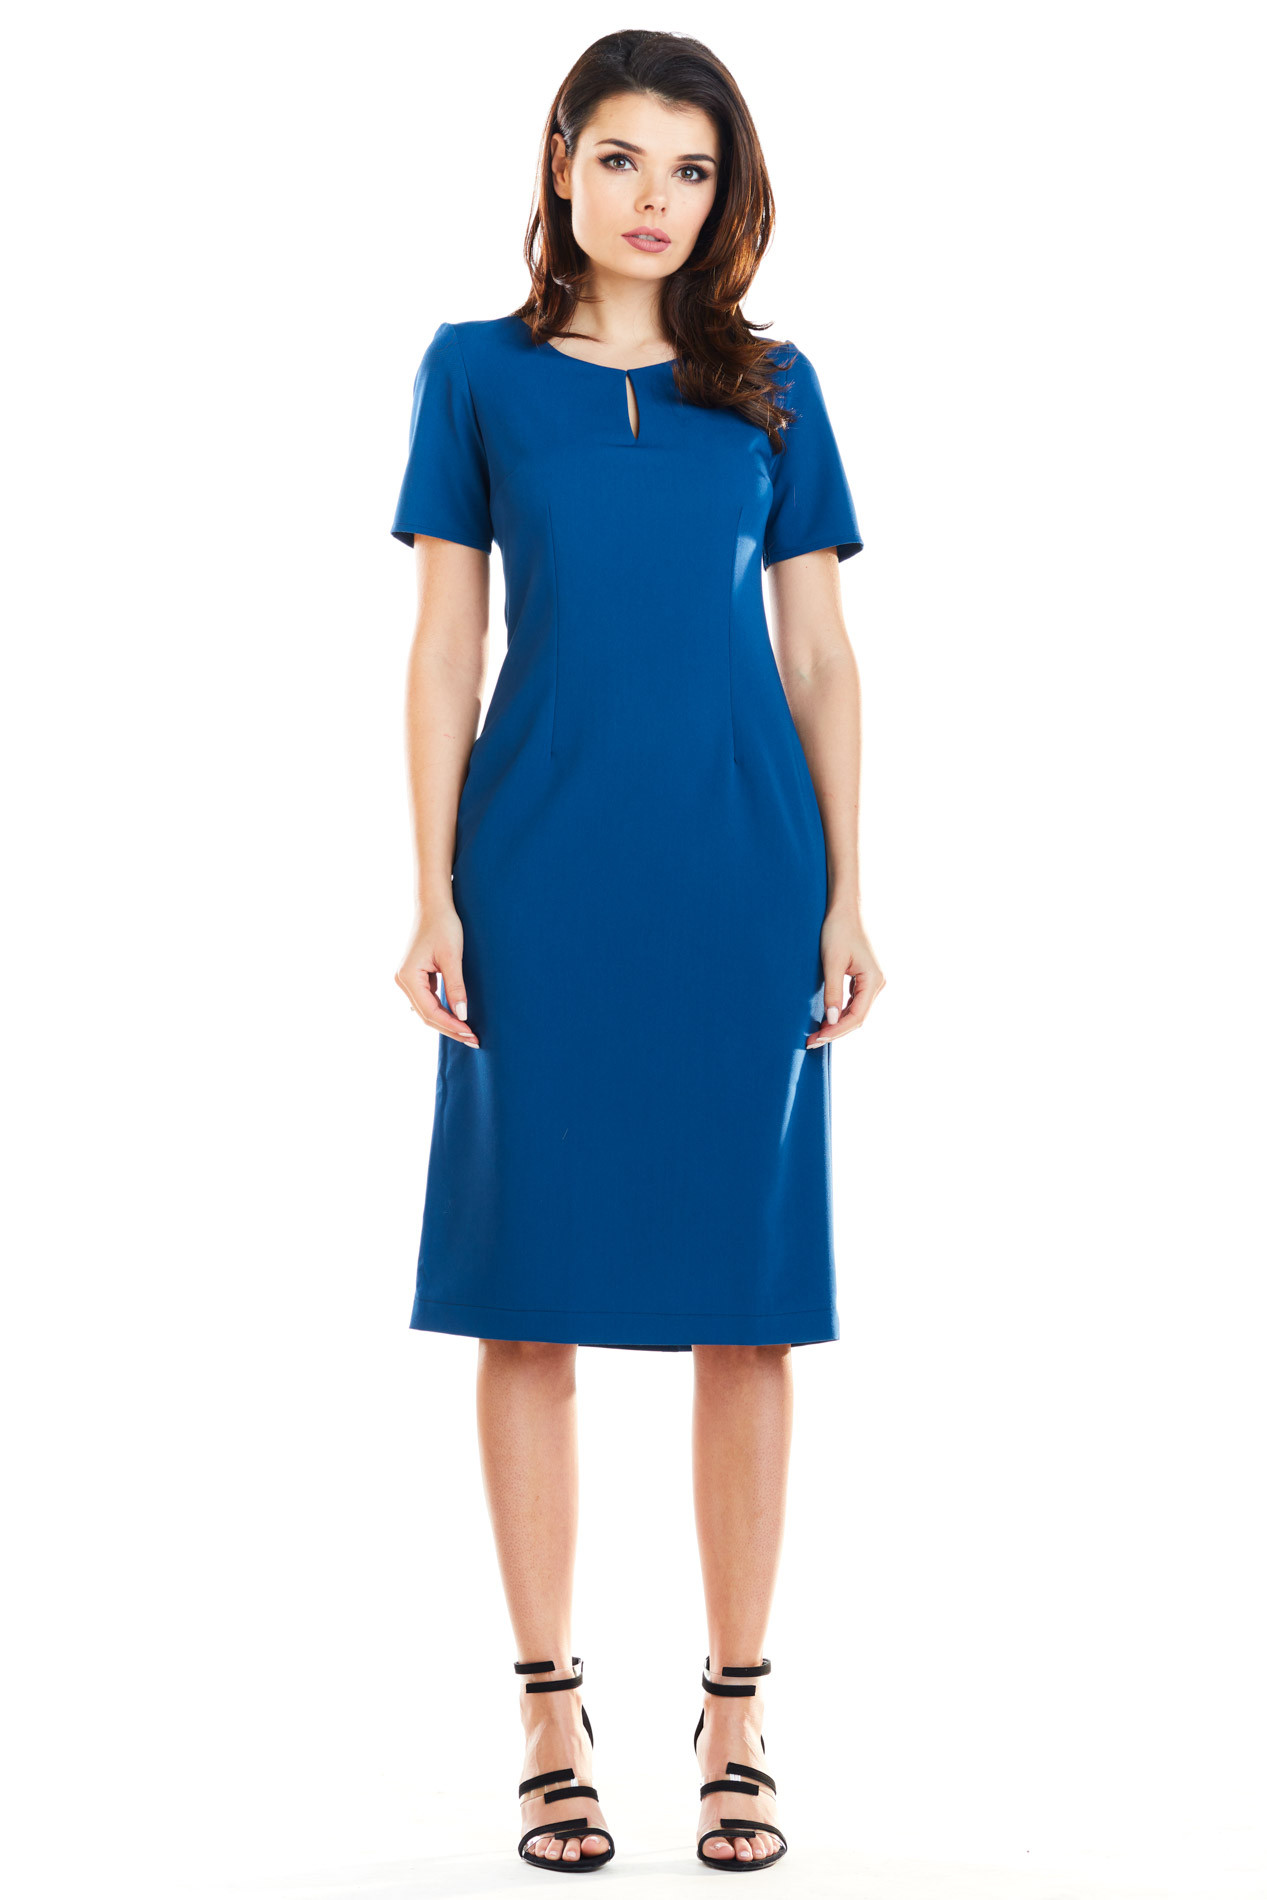 Dámské šaty A252 - Awama tm.modrá M